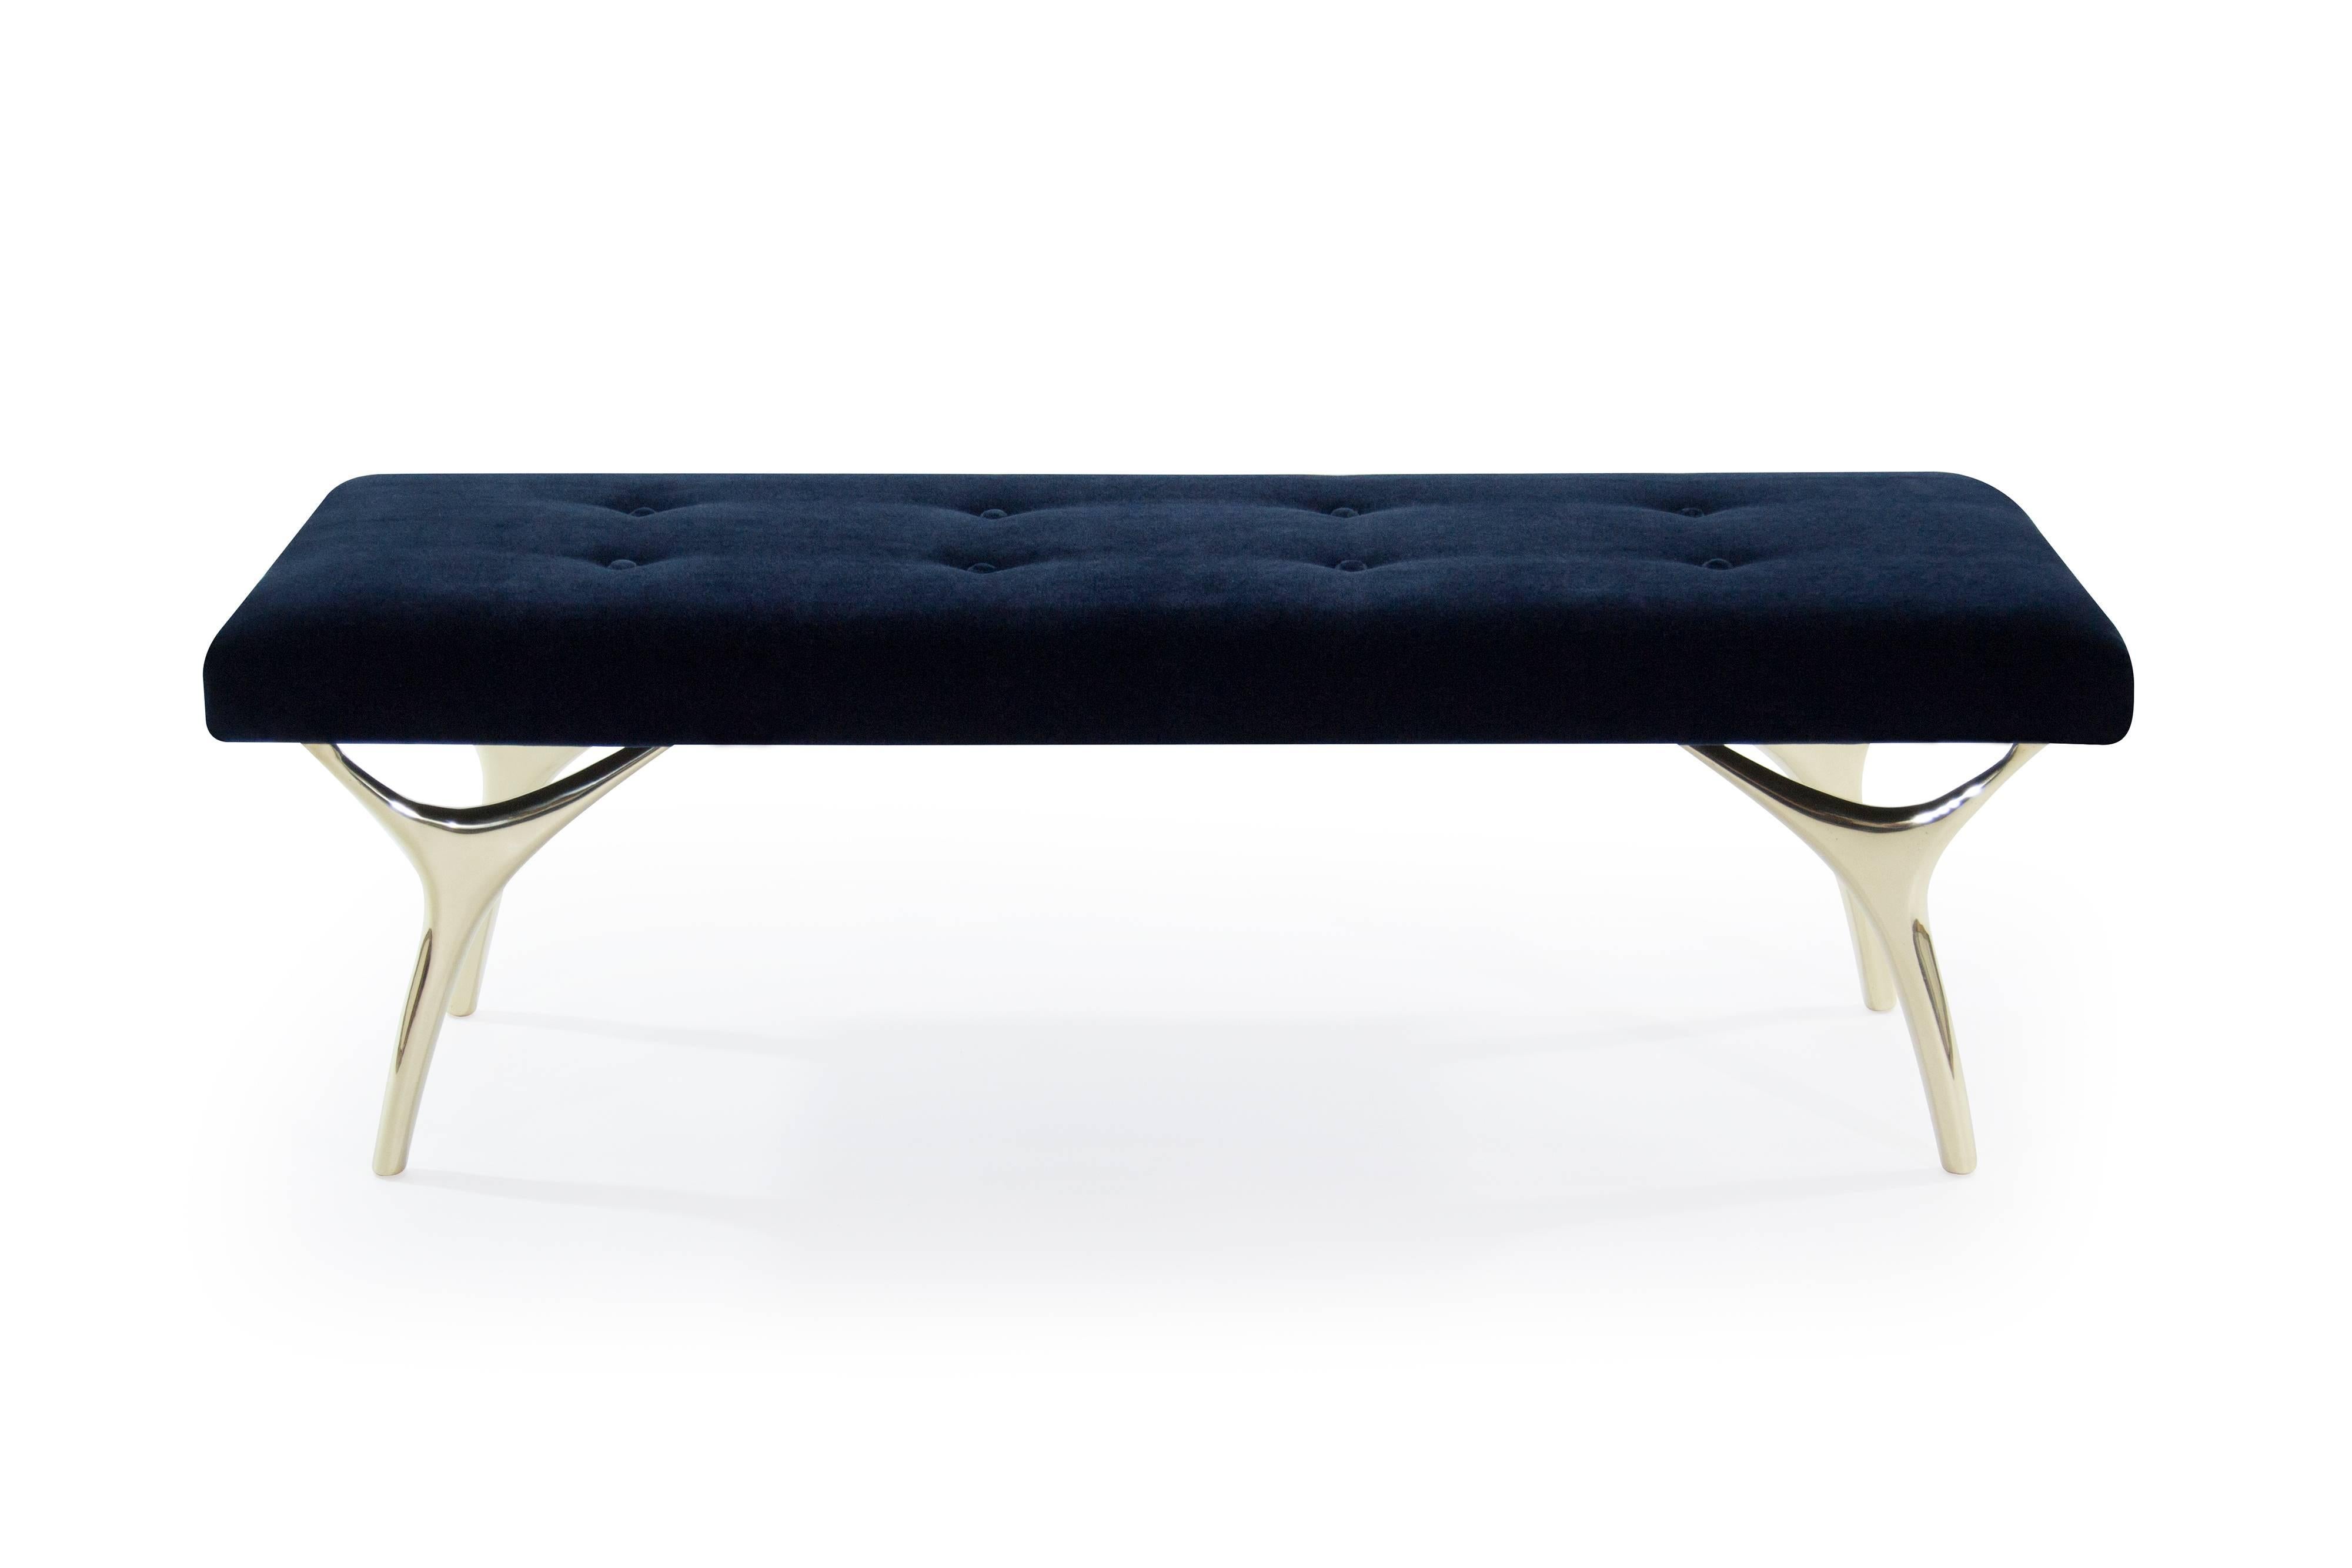 Die Crescent Bench von Carlos Solano für Stamford Modern ist eine bemerkenswerte Mischung aus Eleganz, Stabilität und handwerklicher Kunstfertigkeit. Diese exquisite Bank ist so konzipiert, dass sie jeden Raum durch ihre fesselnde Präsenz und